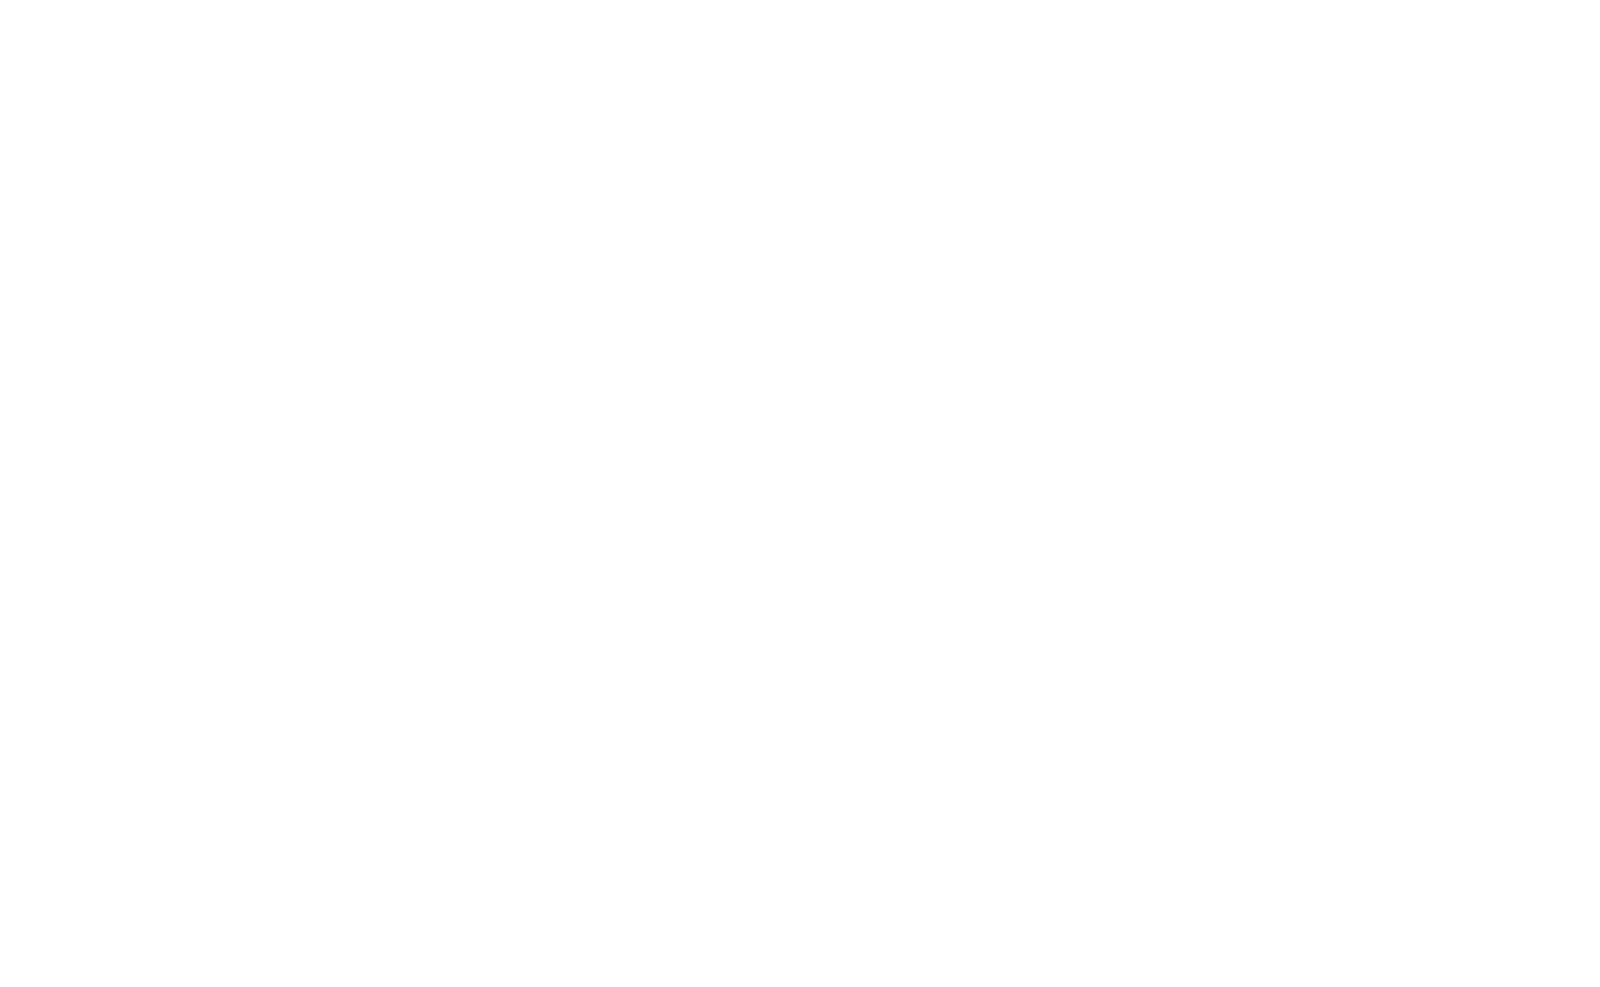 キュウソネコカミ ニューシングル「越えていけ」がアニメ「メジャーセカンド」のオープニングテーマに決定サムネイル画像!